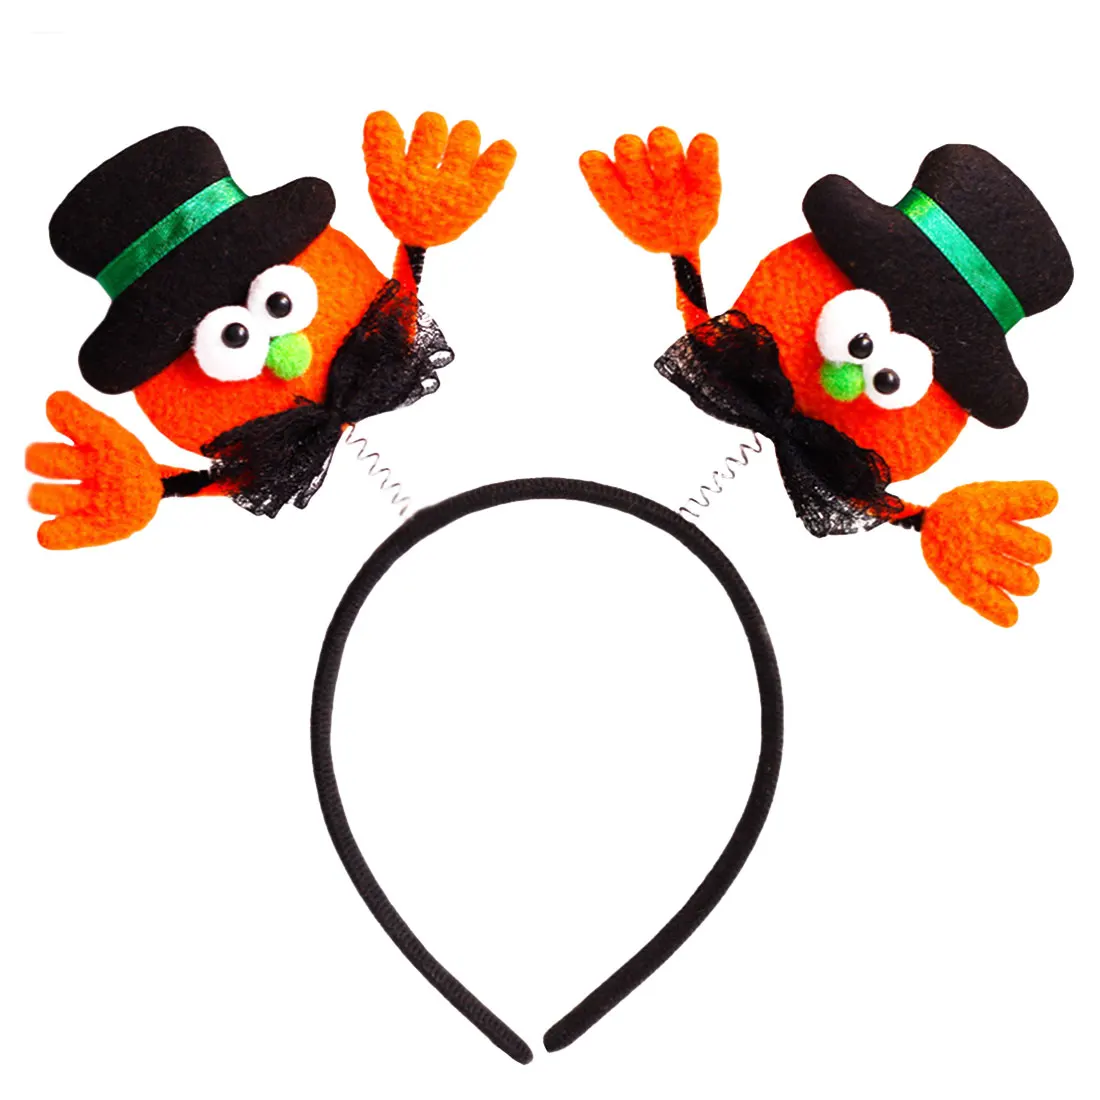 Хэллоуин разнообразие милых повязки на голову тыква шляпа летучая мышь взрослые дети Хэллоуин платье поставки - Цвет: Black hat small hand